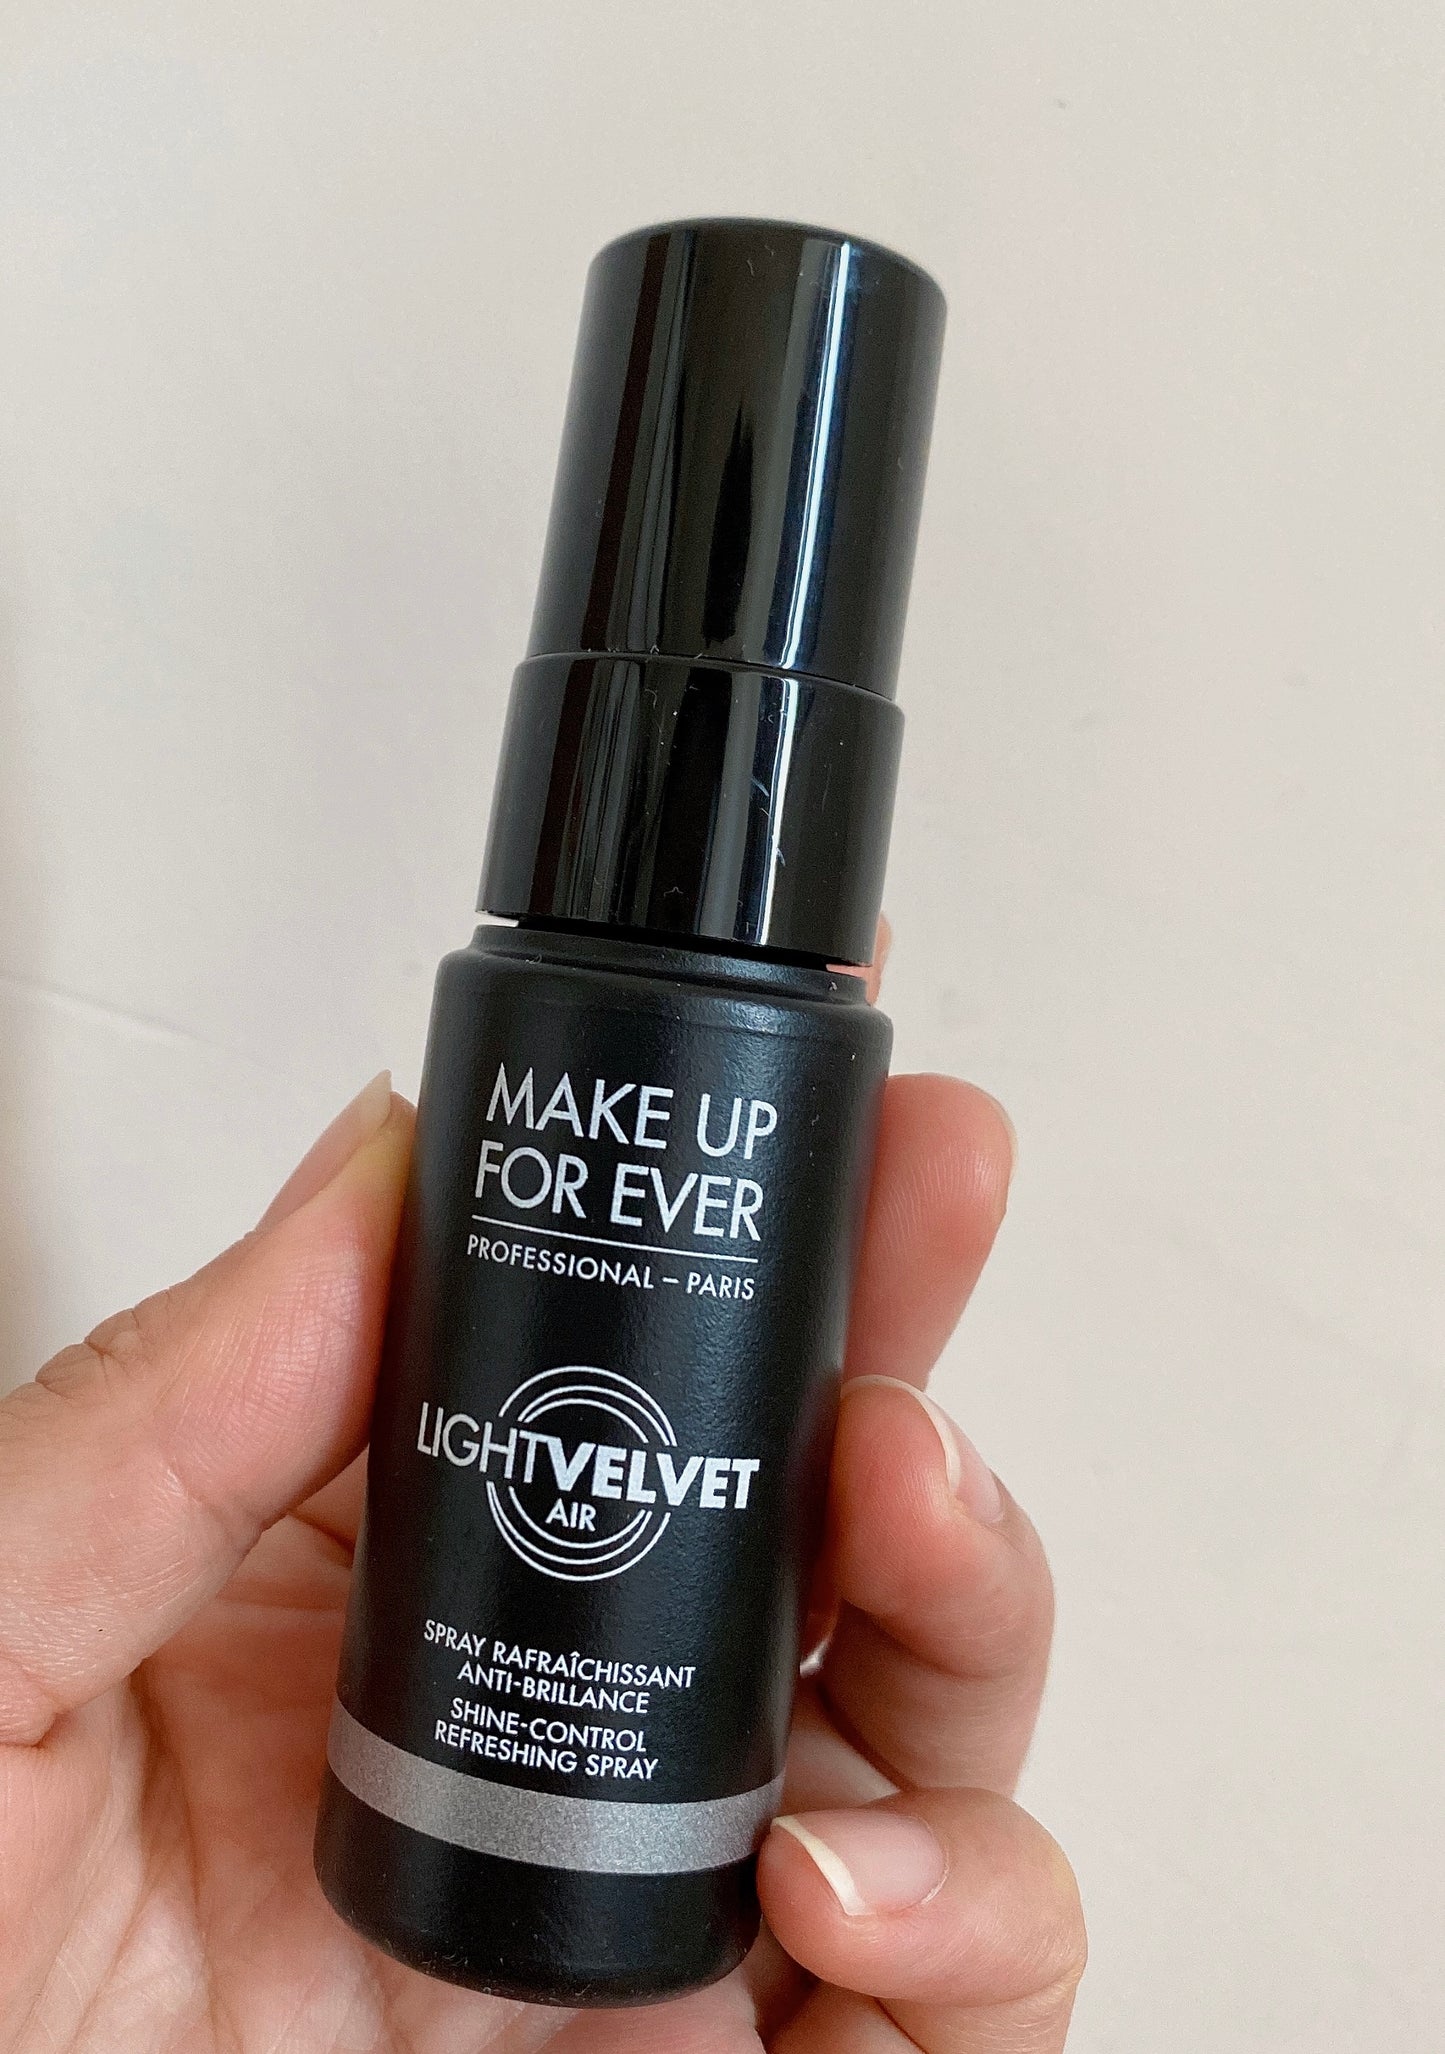 Make up for ever Light Velvet Mist 30ml